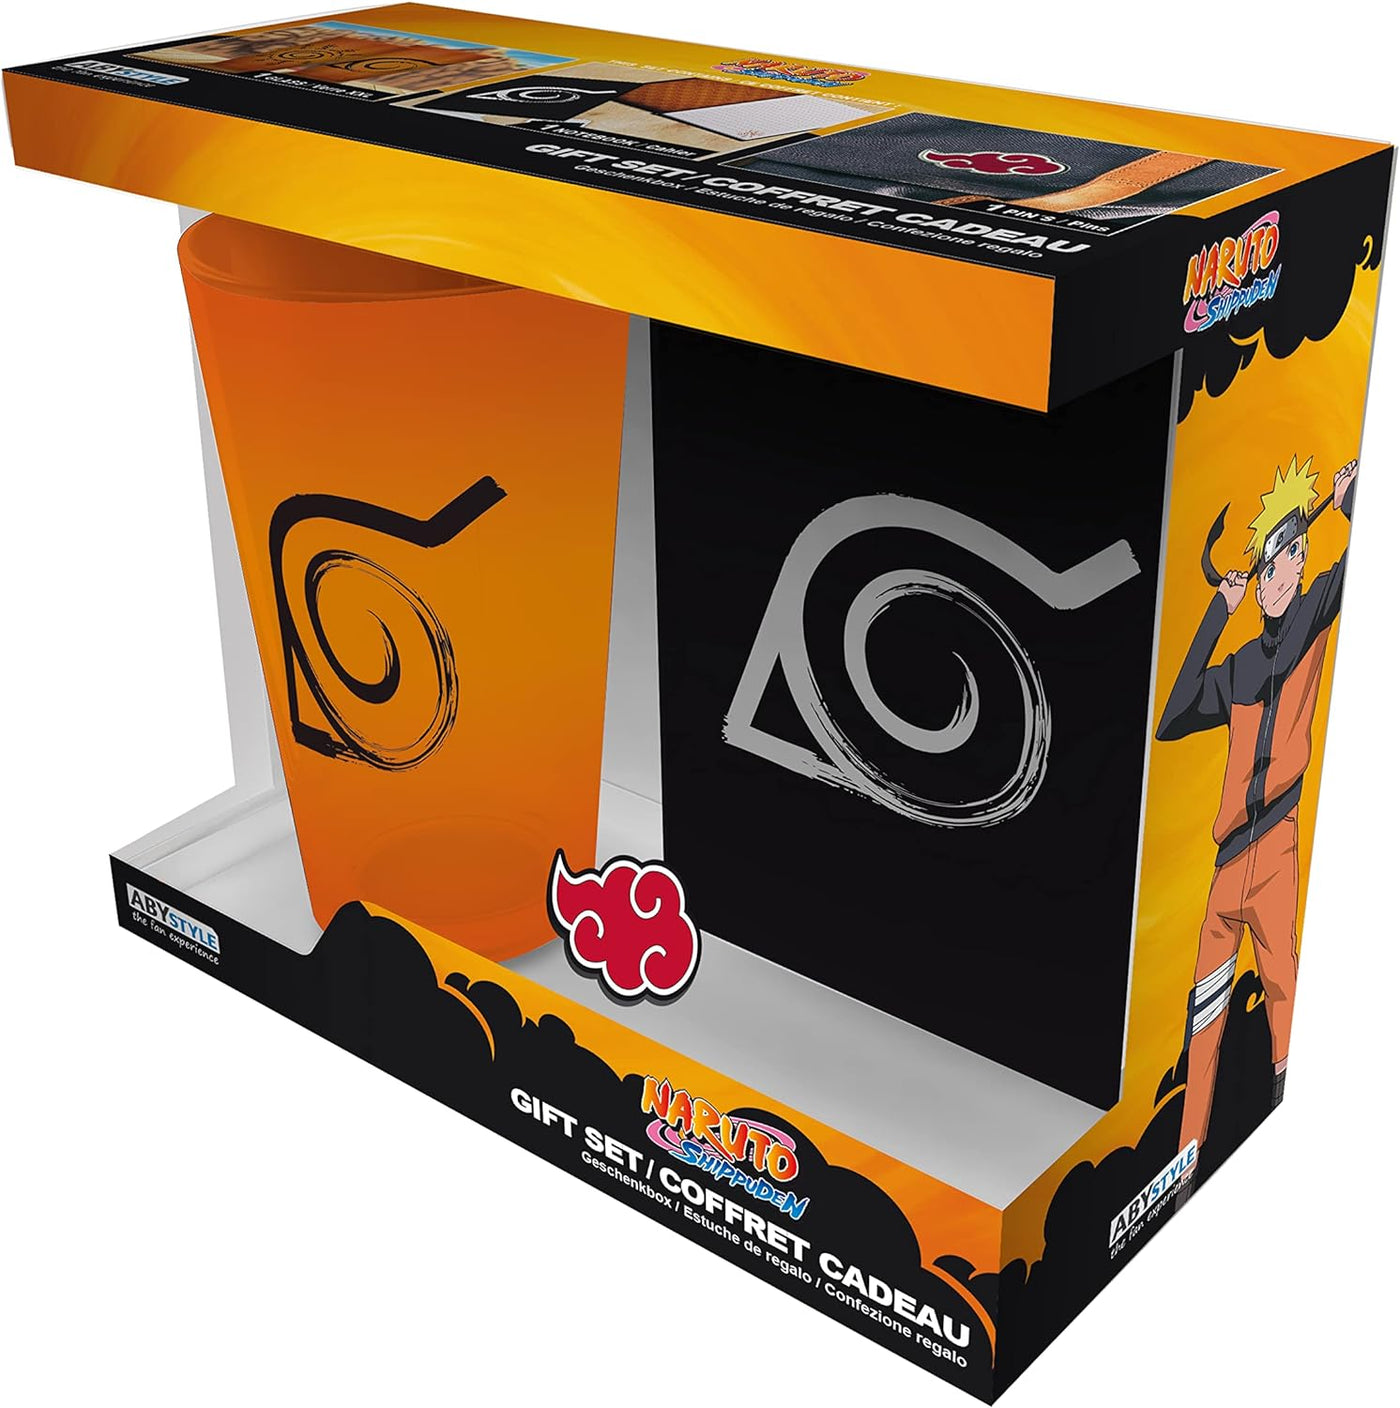 Naruto Shippuden Konoha Gift Set Pin, Hardcover Journal, and 14 Oz Glass Anime Gift